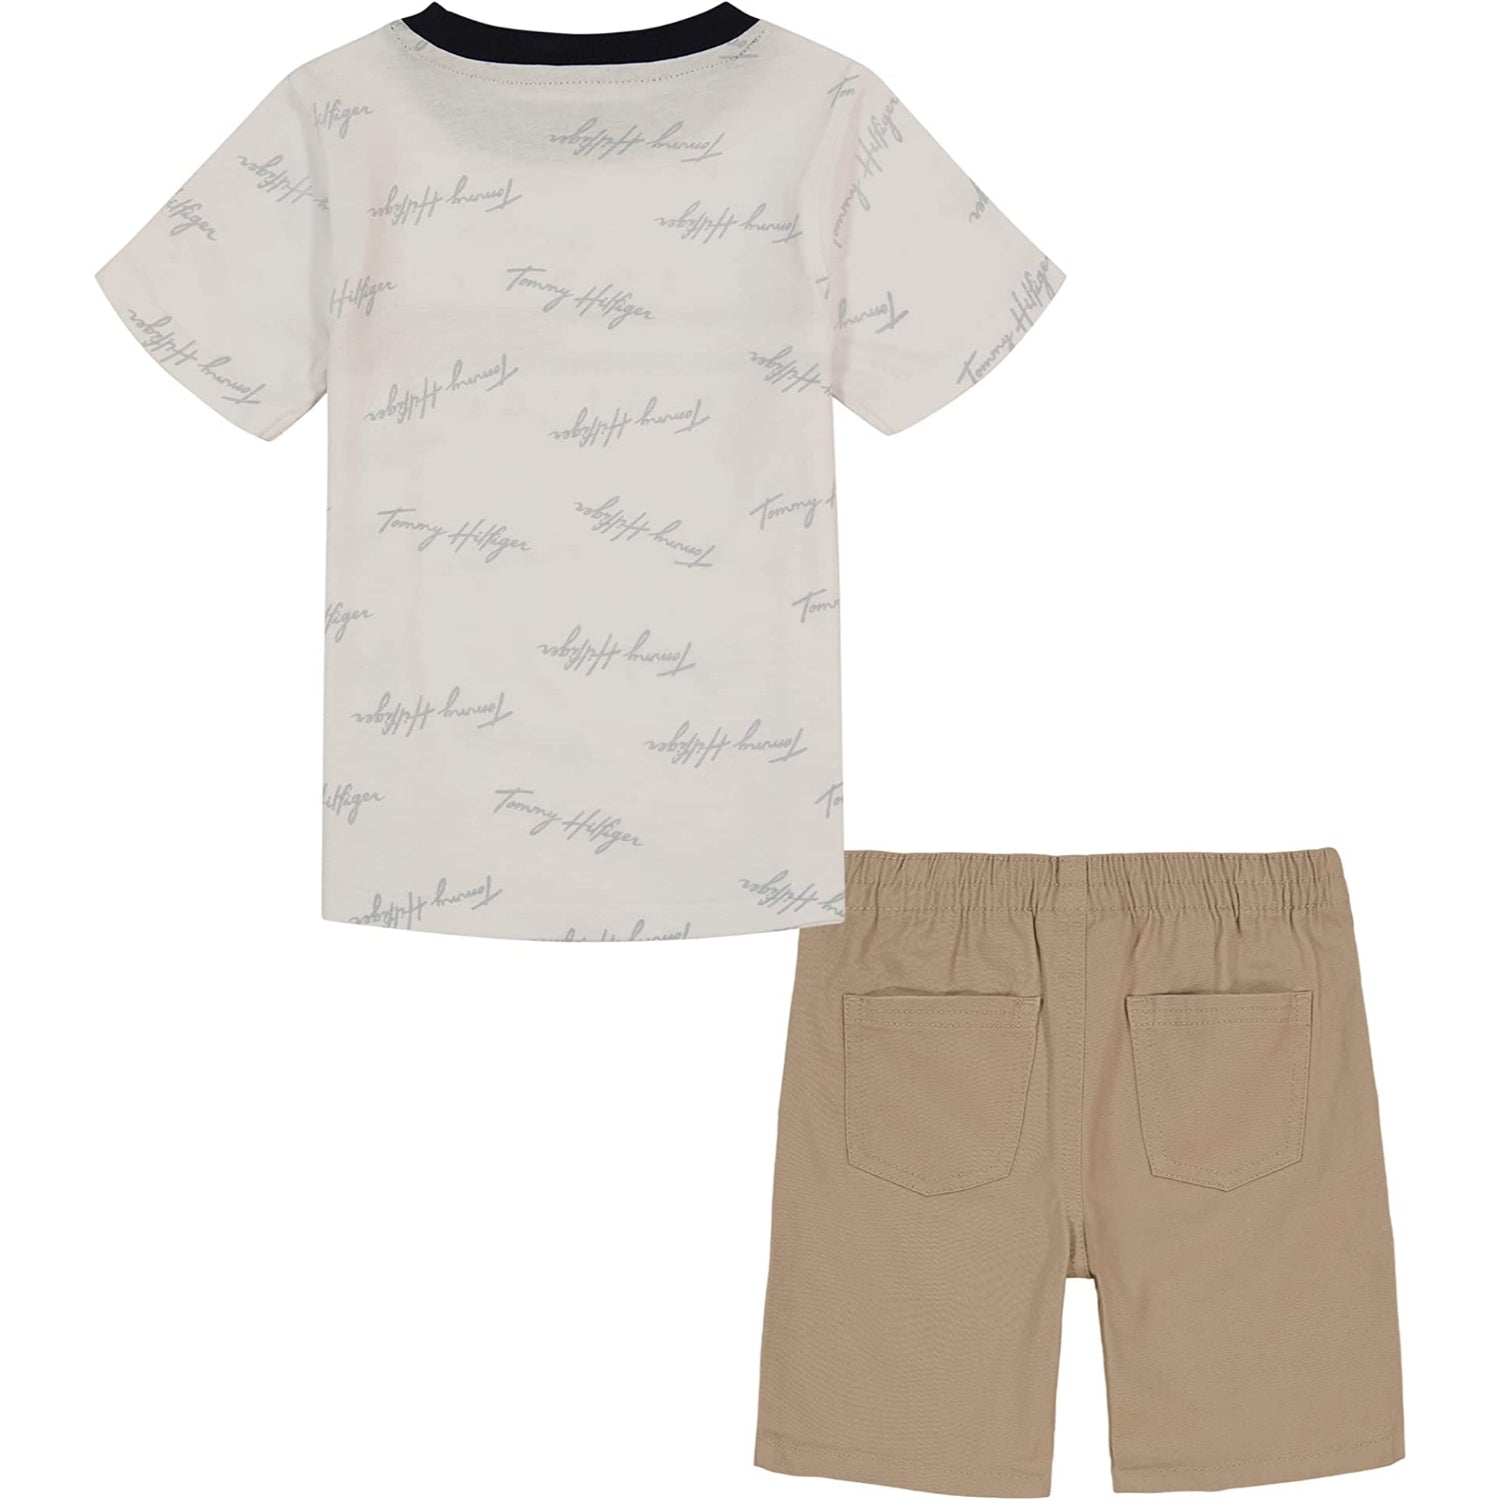 Tommy Hilfiger Boys 2T-4T 2-Piece T-Shirt Short Set – S&D Kids